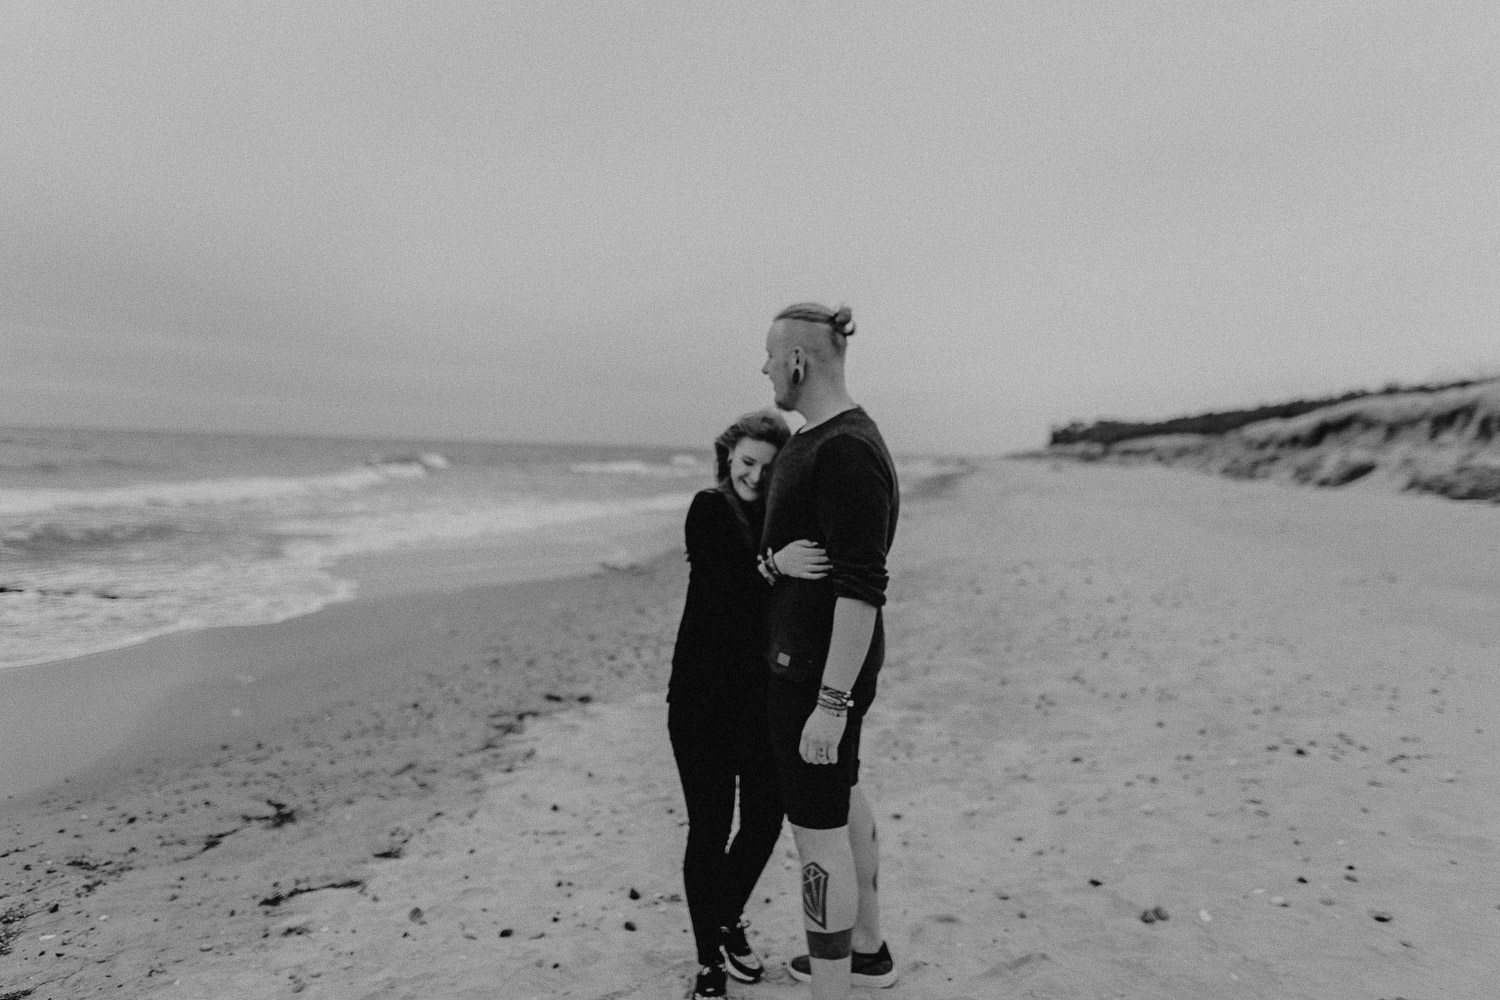 Aufgenommen von Hochzeitsfotograf Kupfergold Photographie aus Rostock. Zu sehen ist ein alternatives tätowiertes Paar am Strand in Torfbrücke